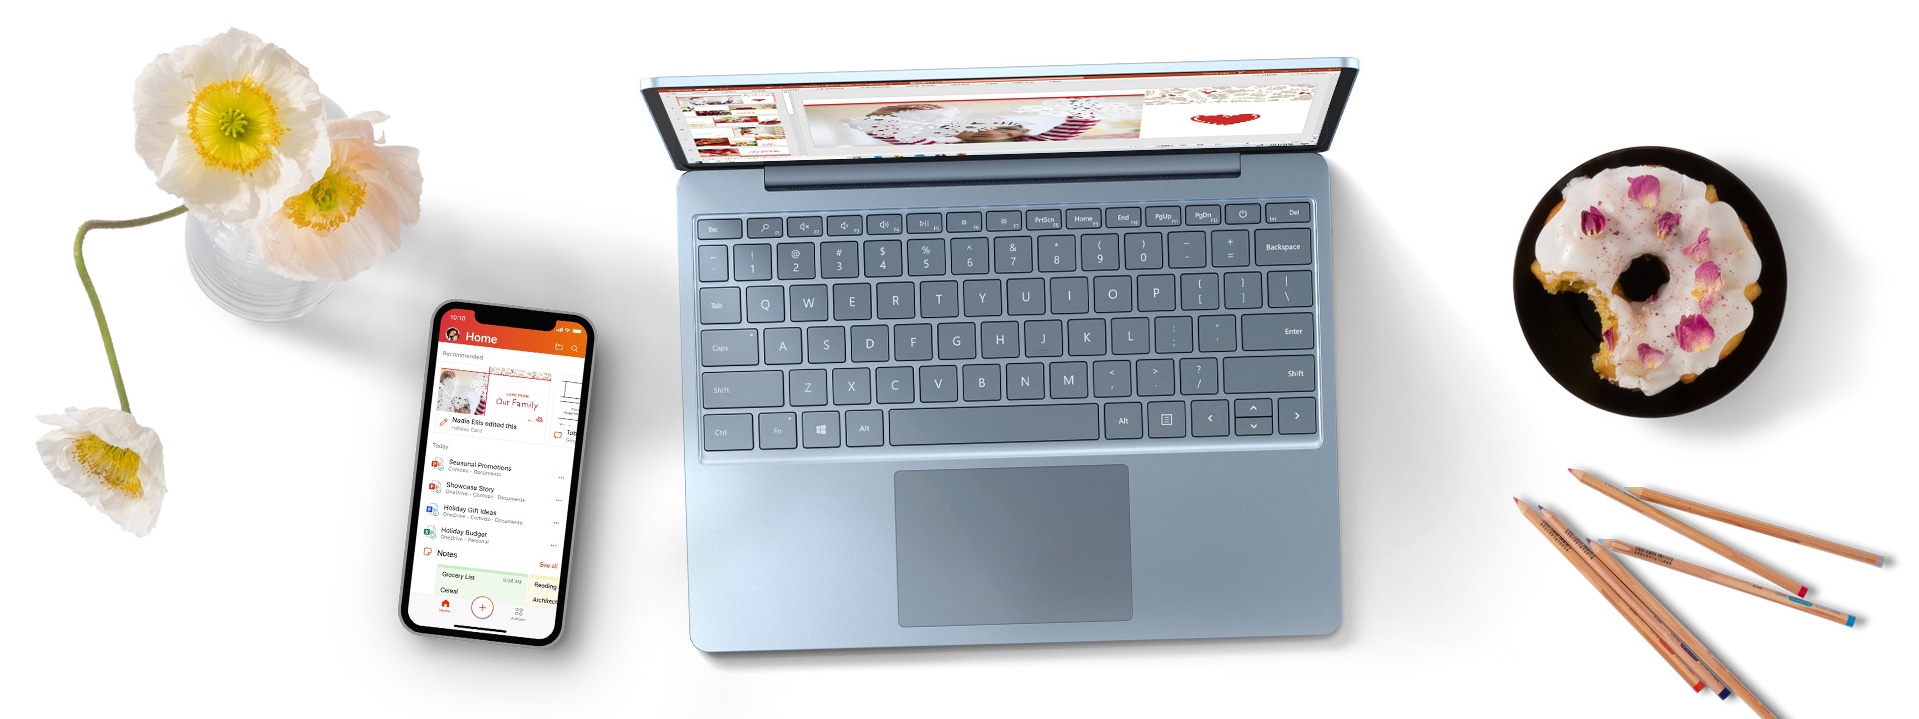 携帯電話、花、皿にのったドーナッツと共にデスクに置かれた Surface Laptop Go